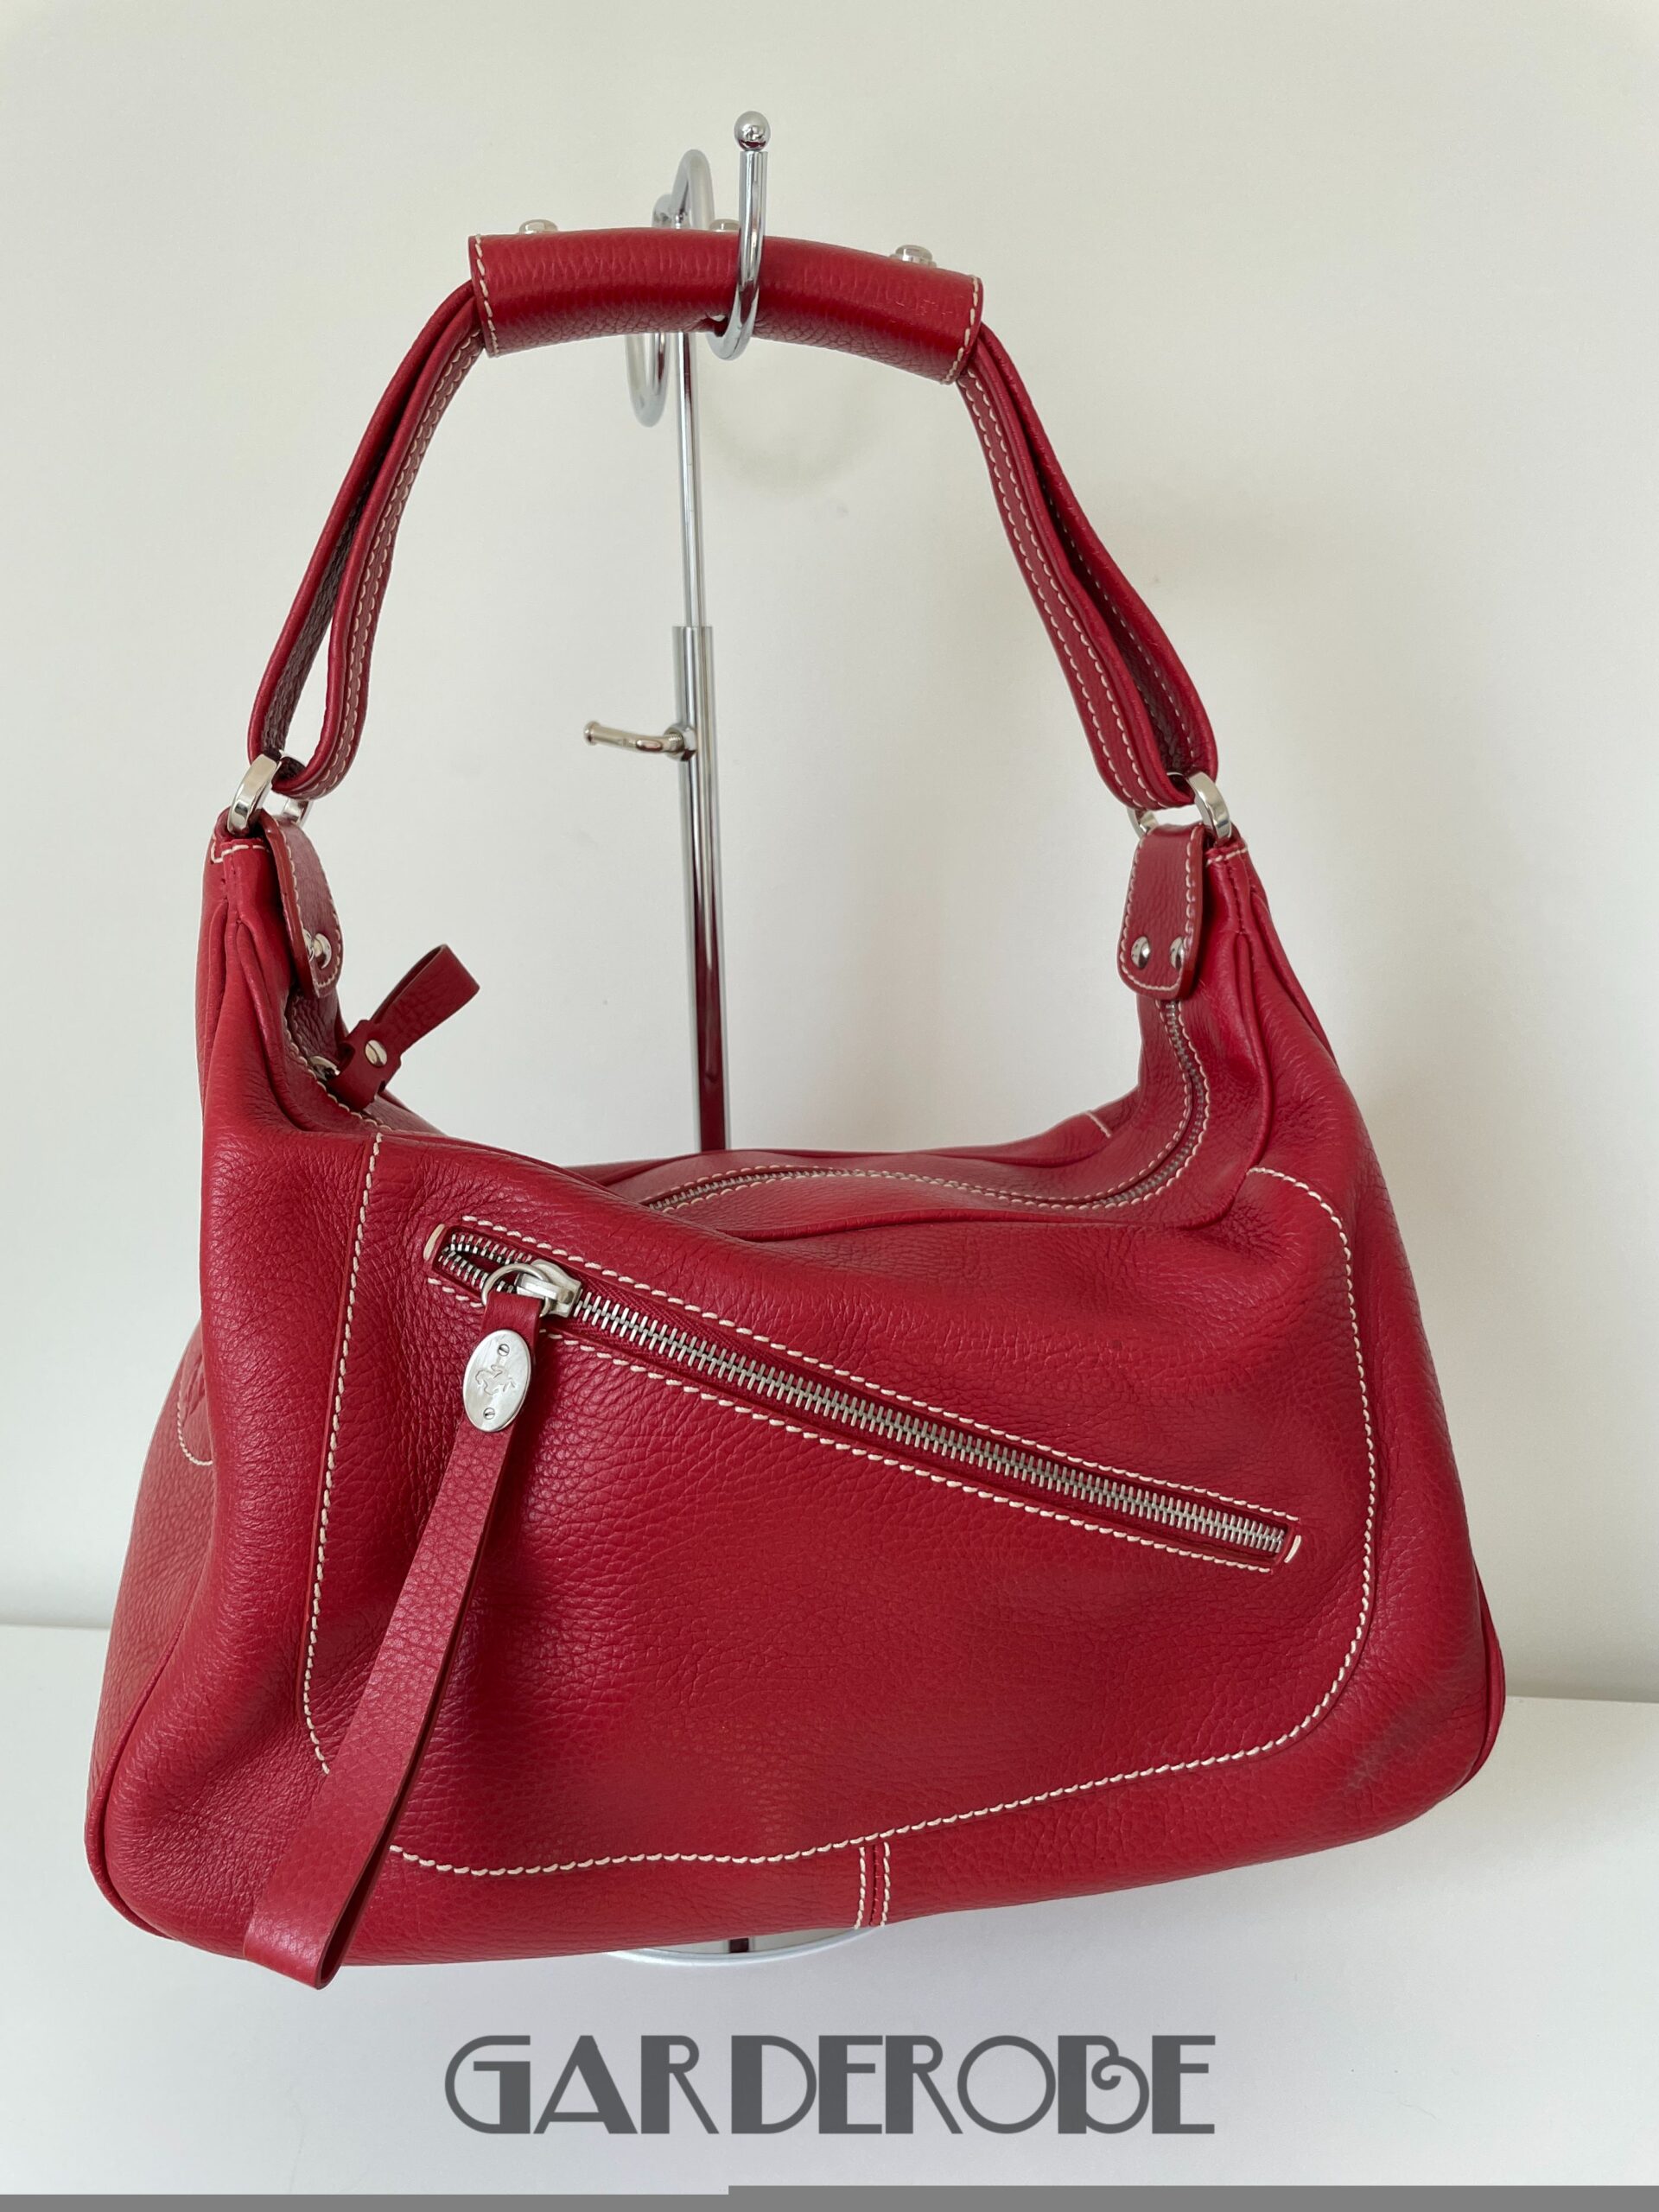 aluminium Getalenteerd Helm Rode stevige Tod's handtas zonder gebruikssporen - Garderobe Vintage  Kortrijk